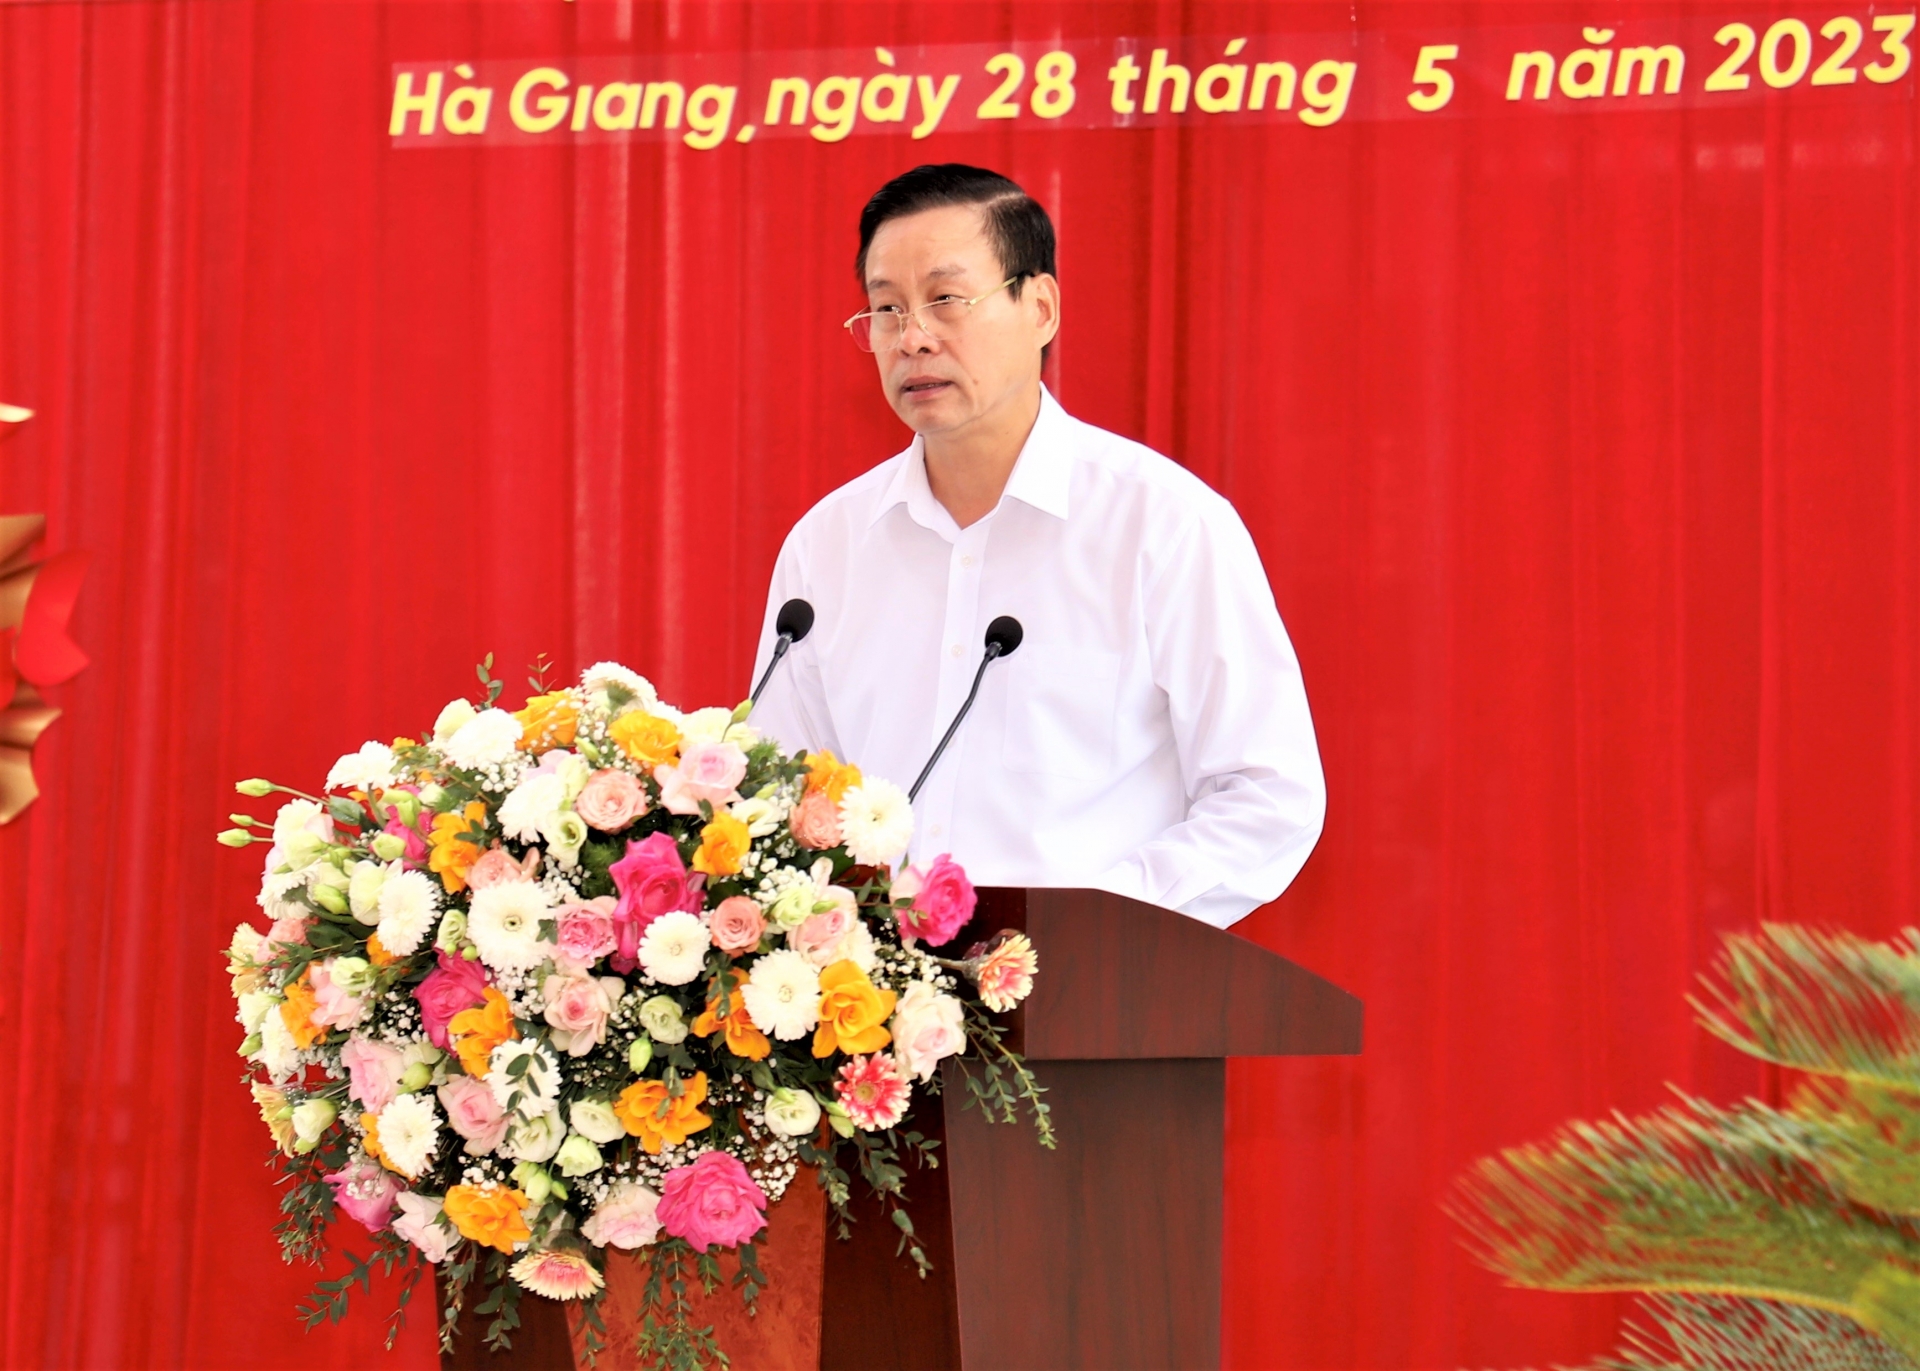 Chủ tịch UBND tỉnh Nguyễn Văn Sơn báo cáo quá trình đầu tư xây dựng Bảo tàng tỉnh